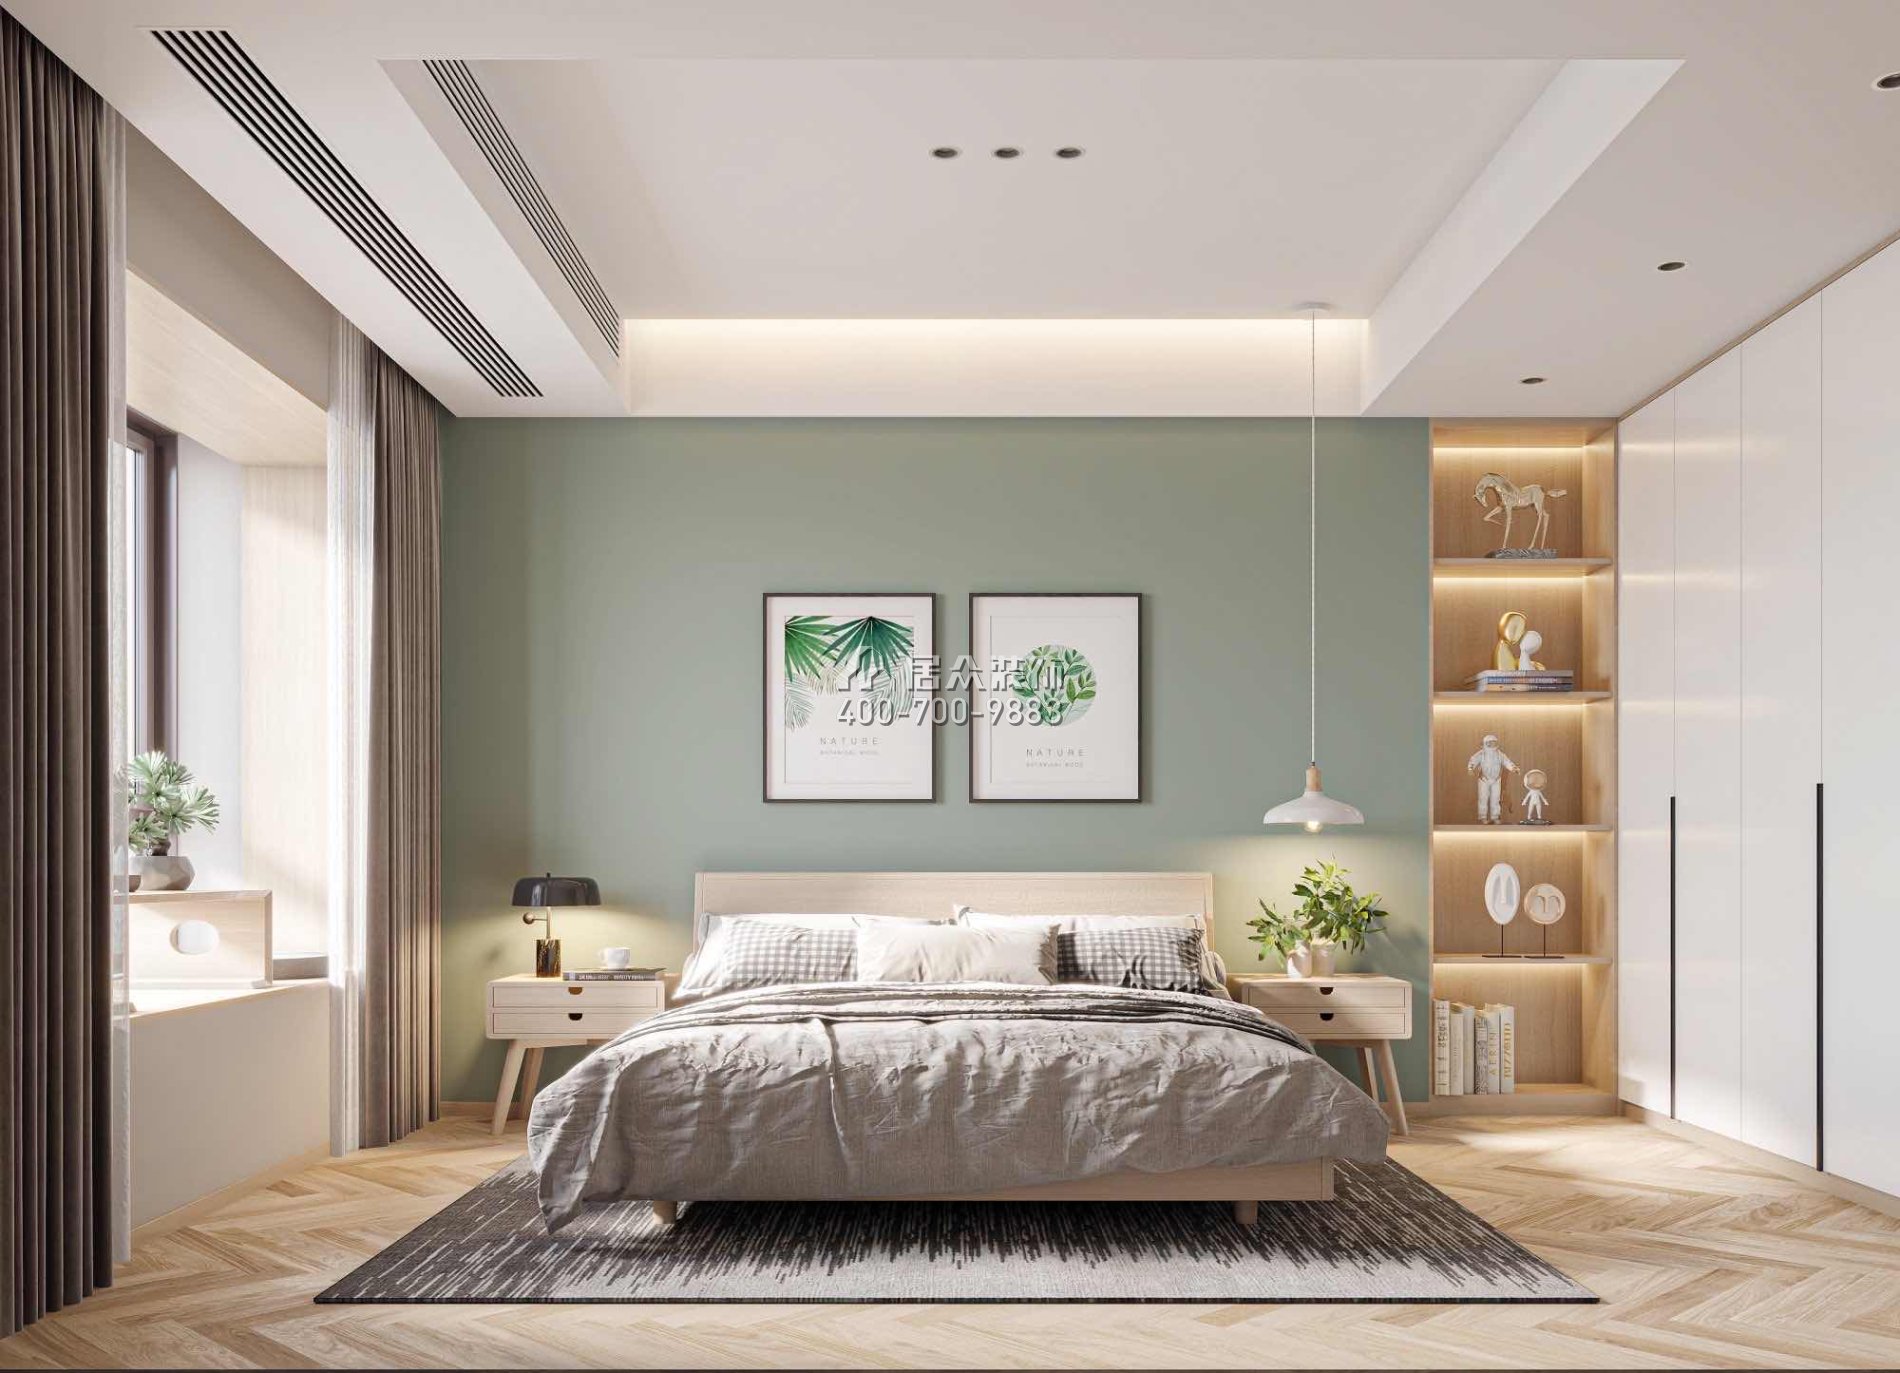 恒裕水墨兰亭370平方米中式风格复式户型卧室装修效果图